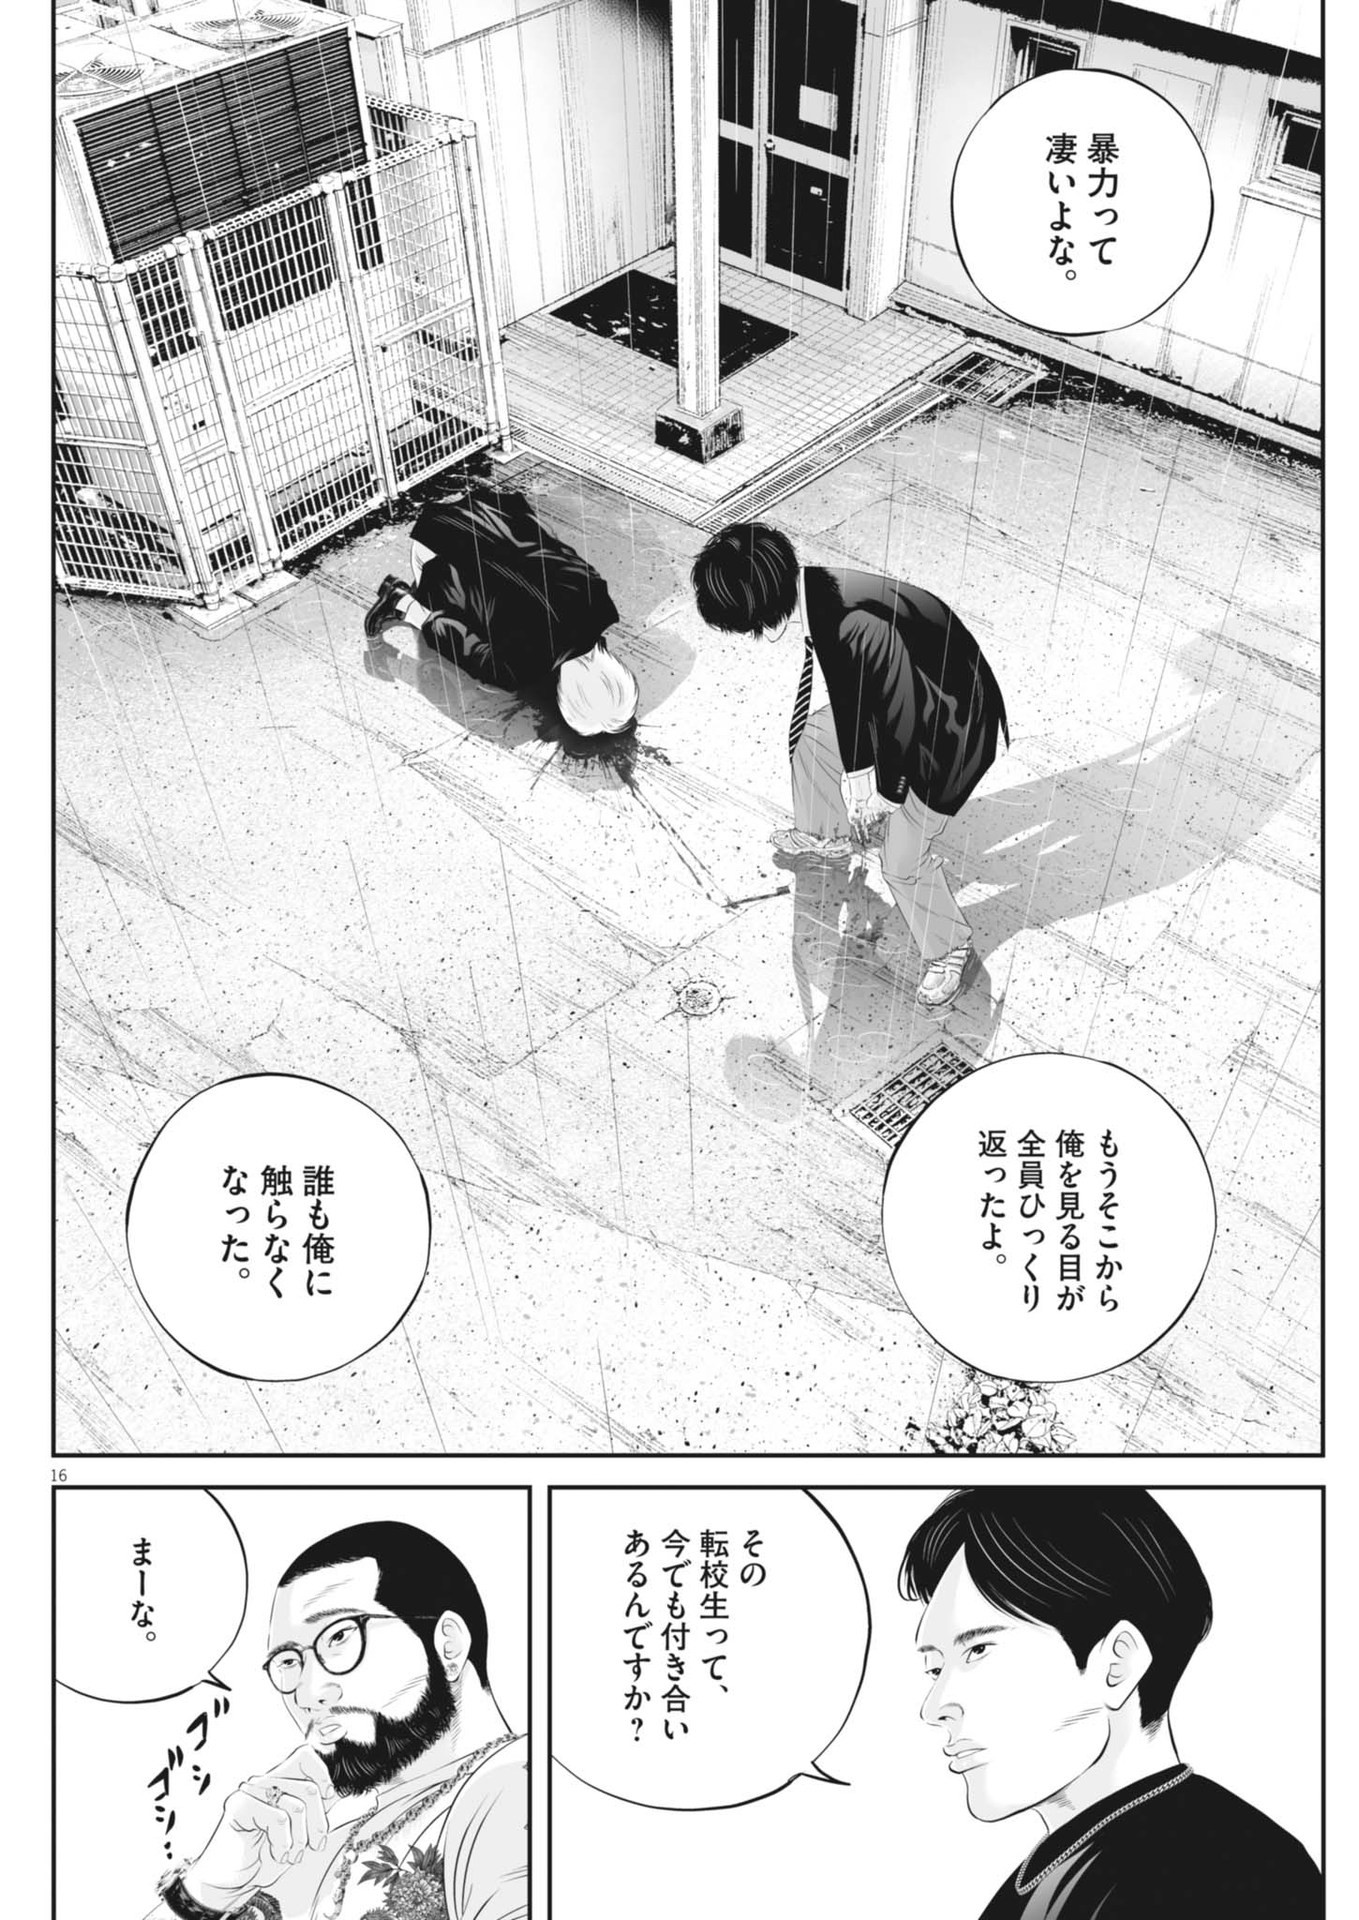 Kujou no Taizai - Chapter 103 - Page 16